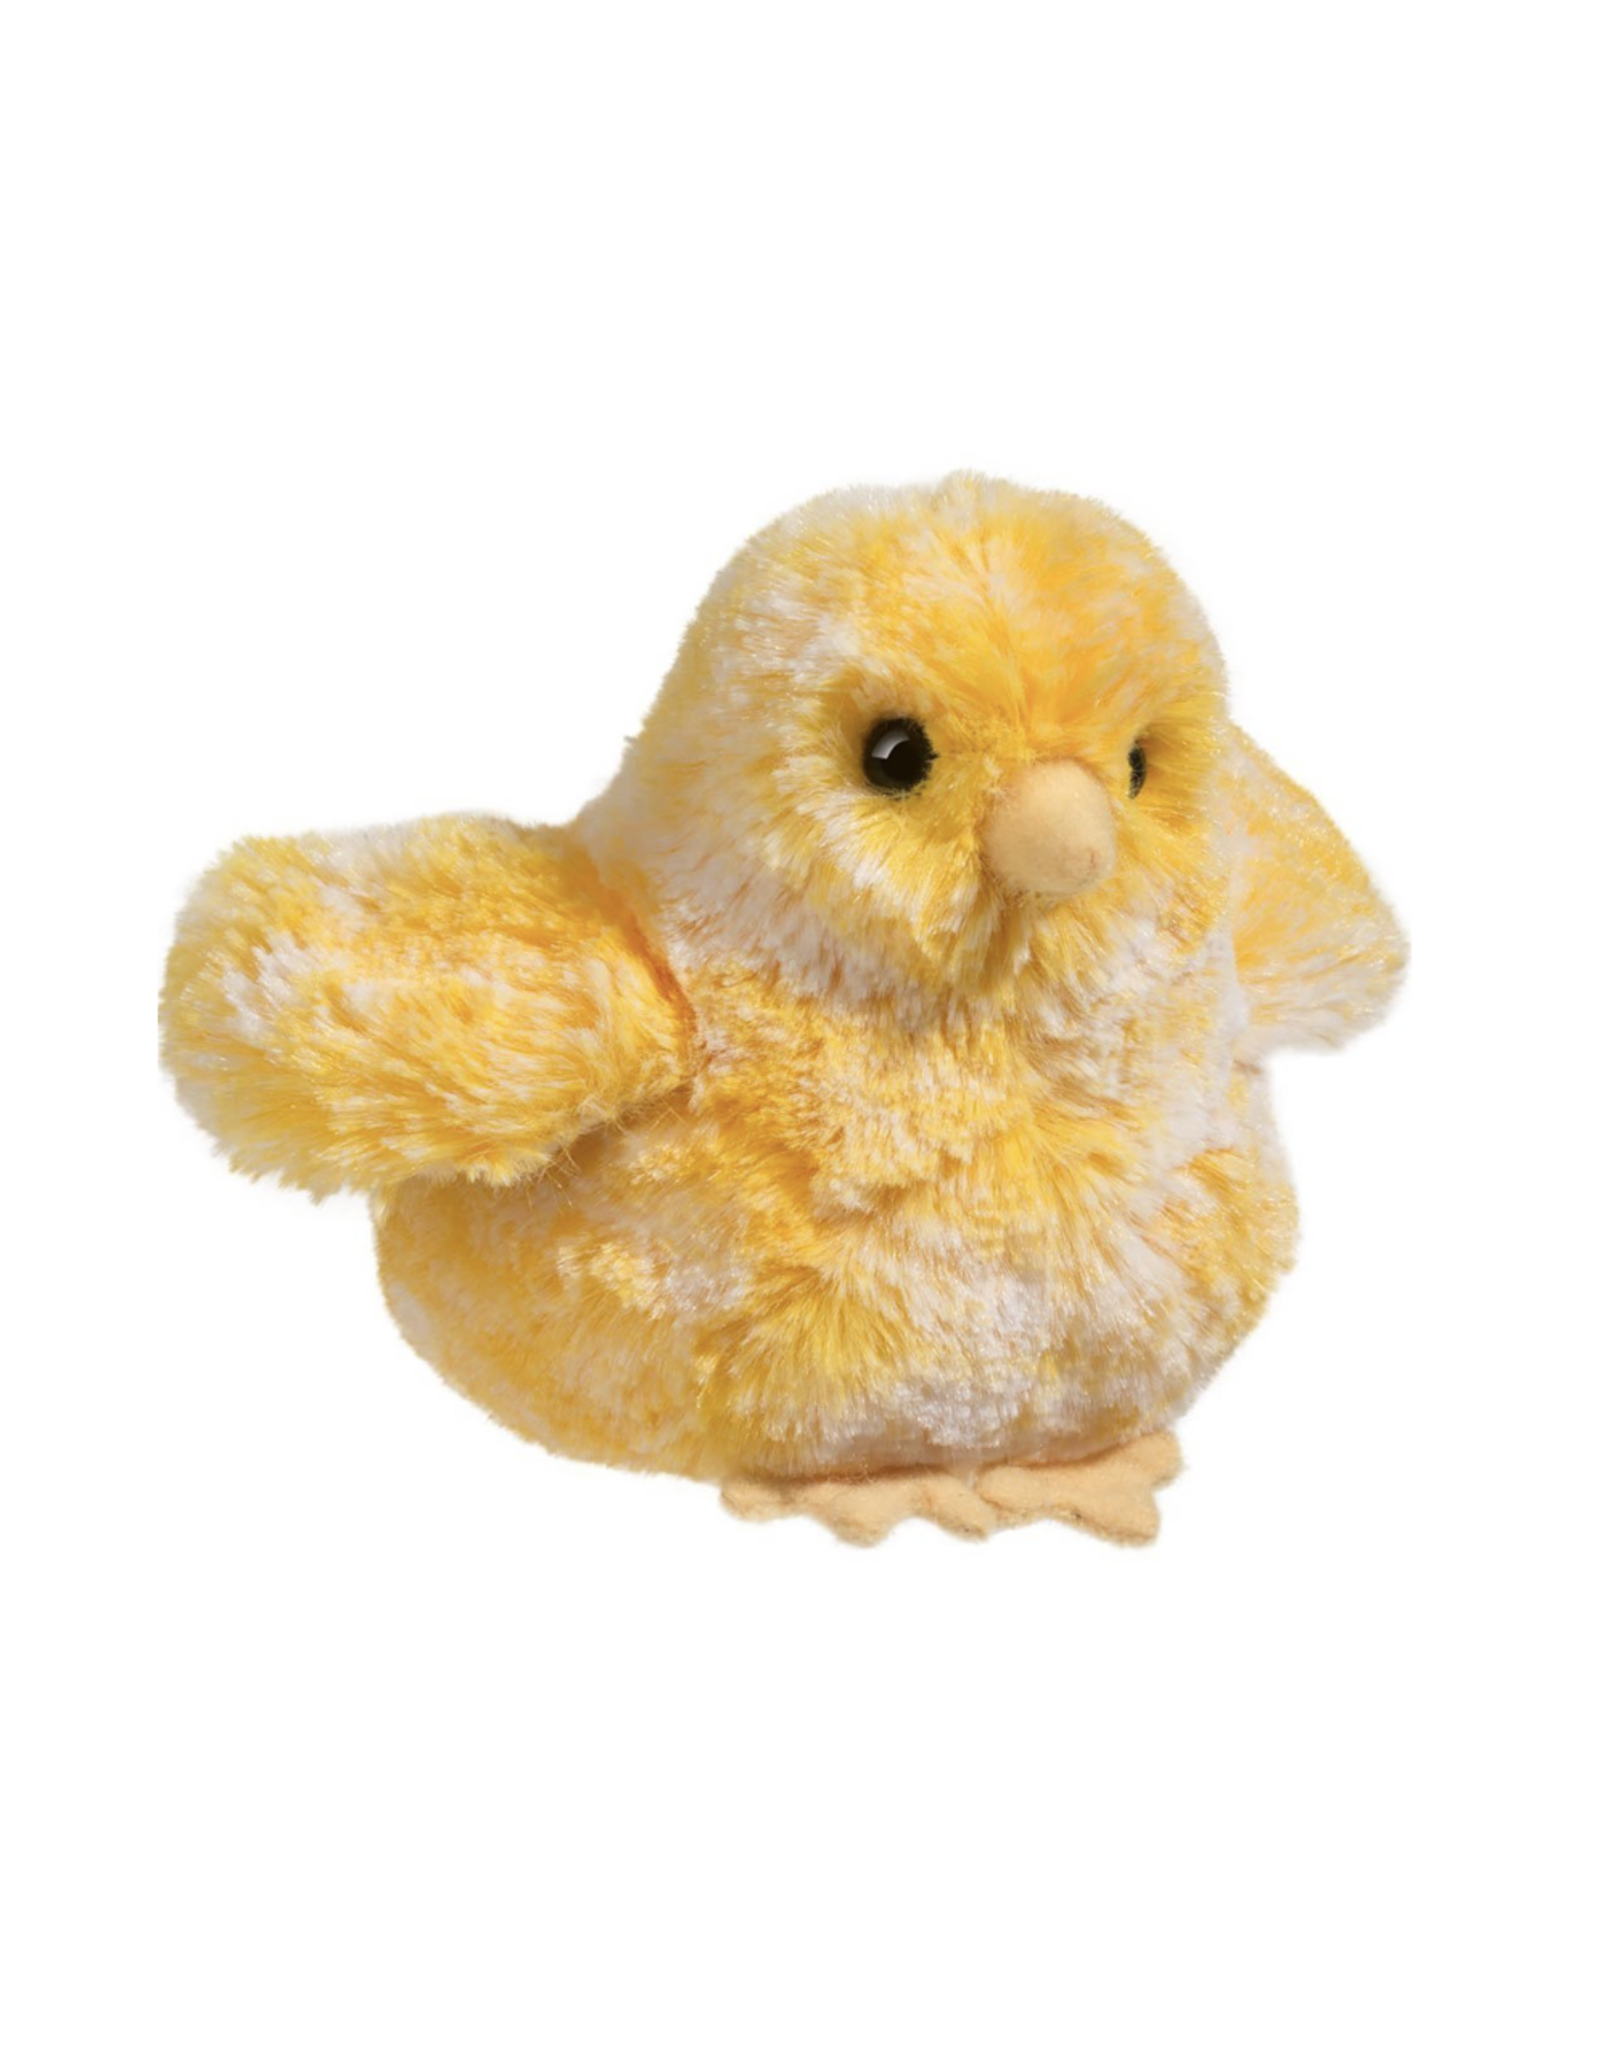 Douglas Chicks Stuffed Animal - Yellow Multi